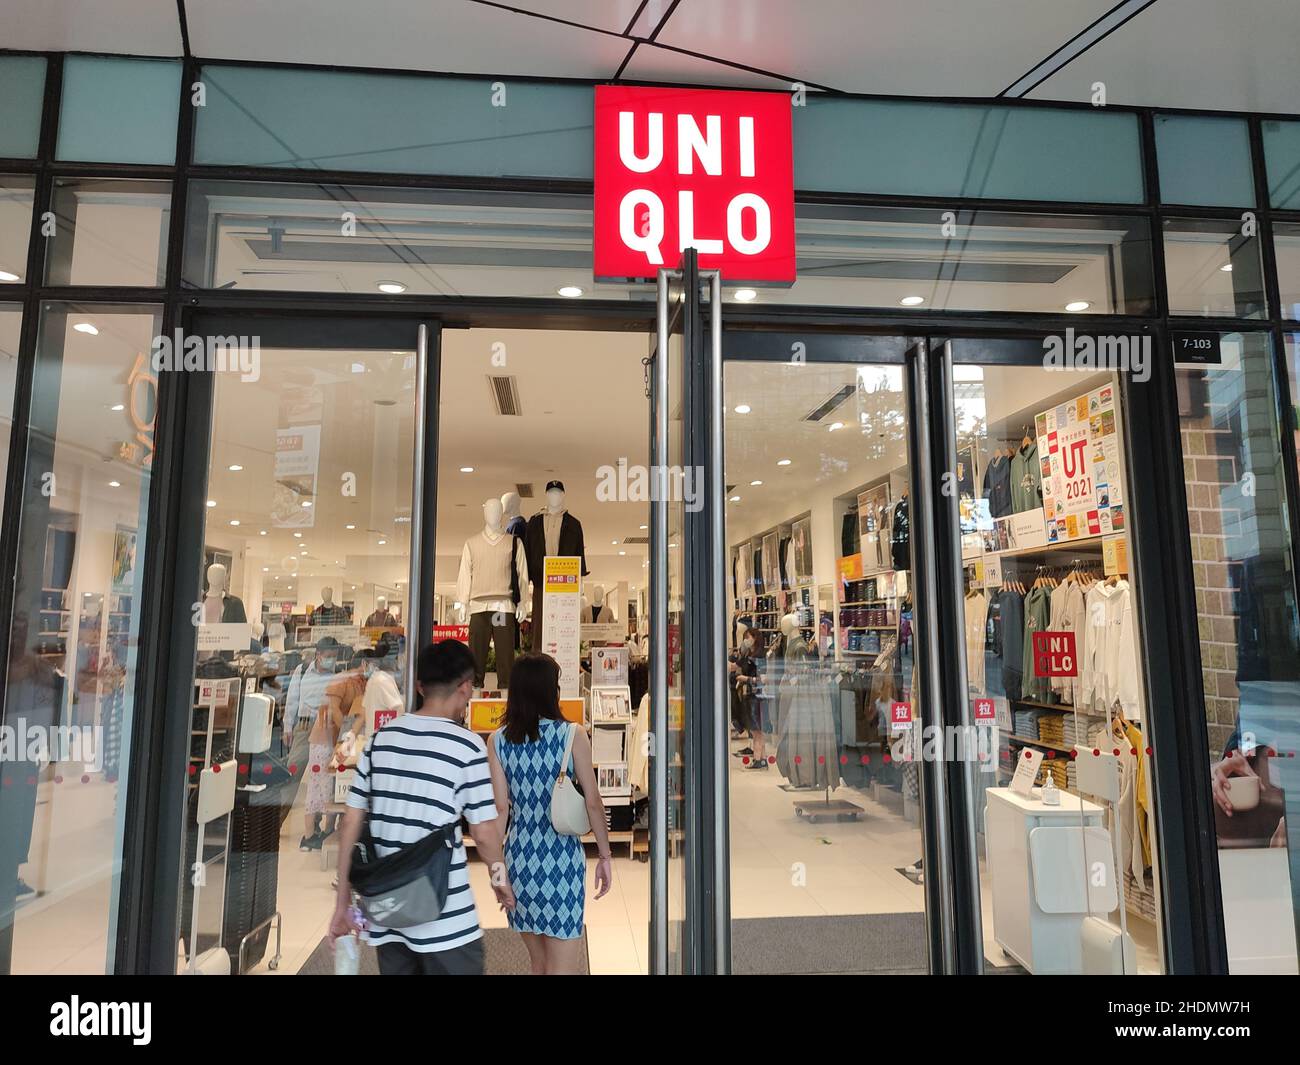 SHANGHAI, CHINA - 28. AUGUST 2021 - Am 28. August 2021 Wird Ein UNIQLO-Store in Shanghai, China, gezeigt. Die japanische Bekleidungsmarke Uniqlo lehnte einen Kommentar ab Stockfoto